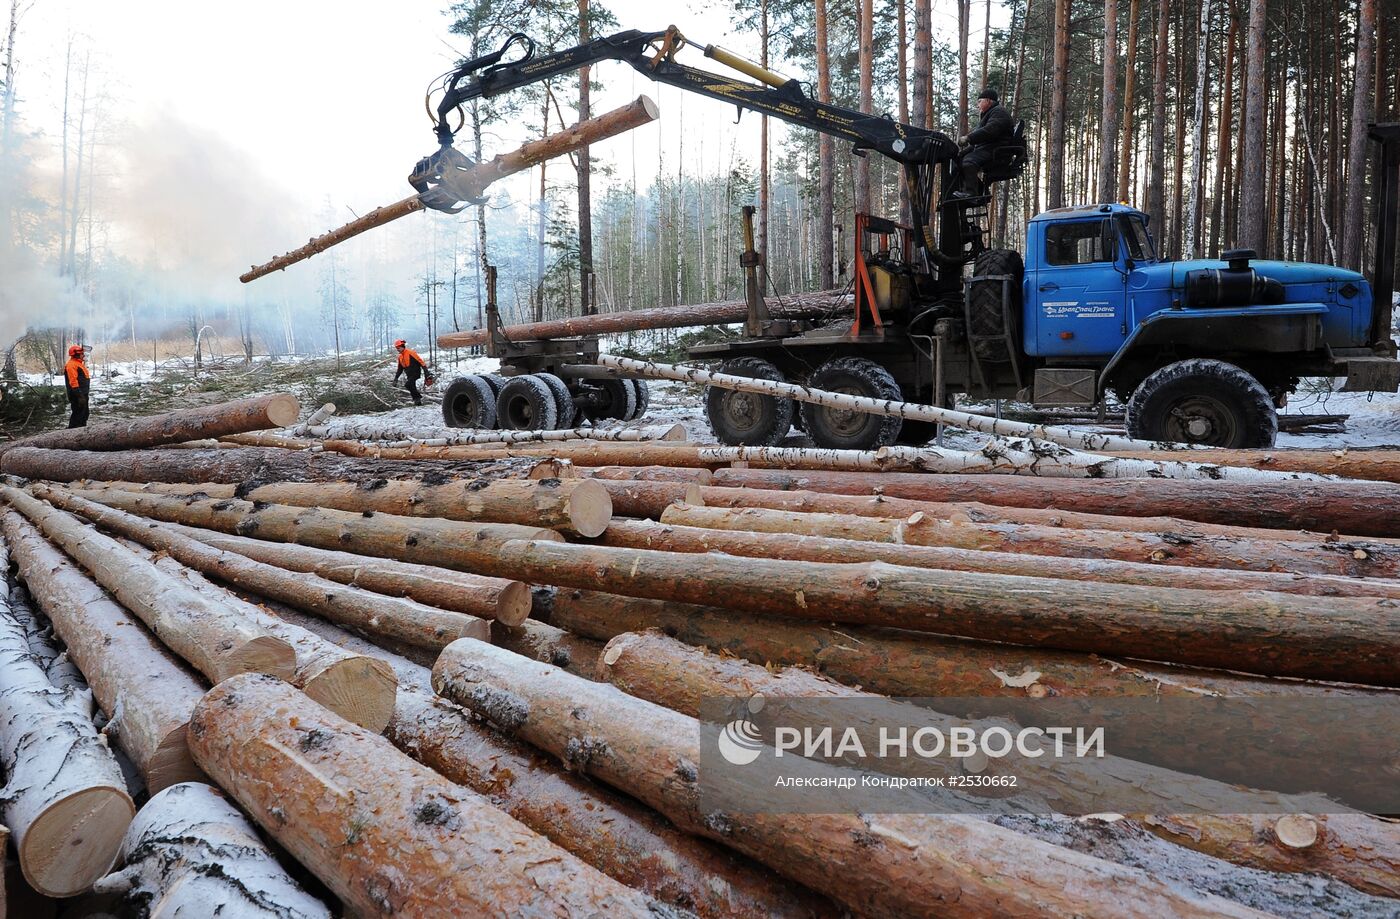 Предприятие по заготовке и переработке древесины "Кыштымский лес" в Челябинской области